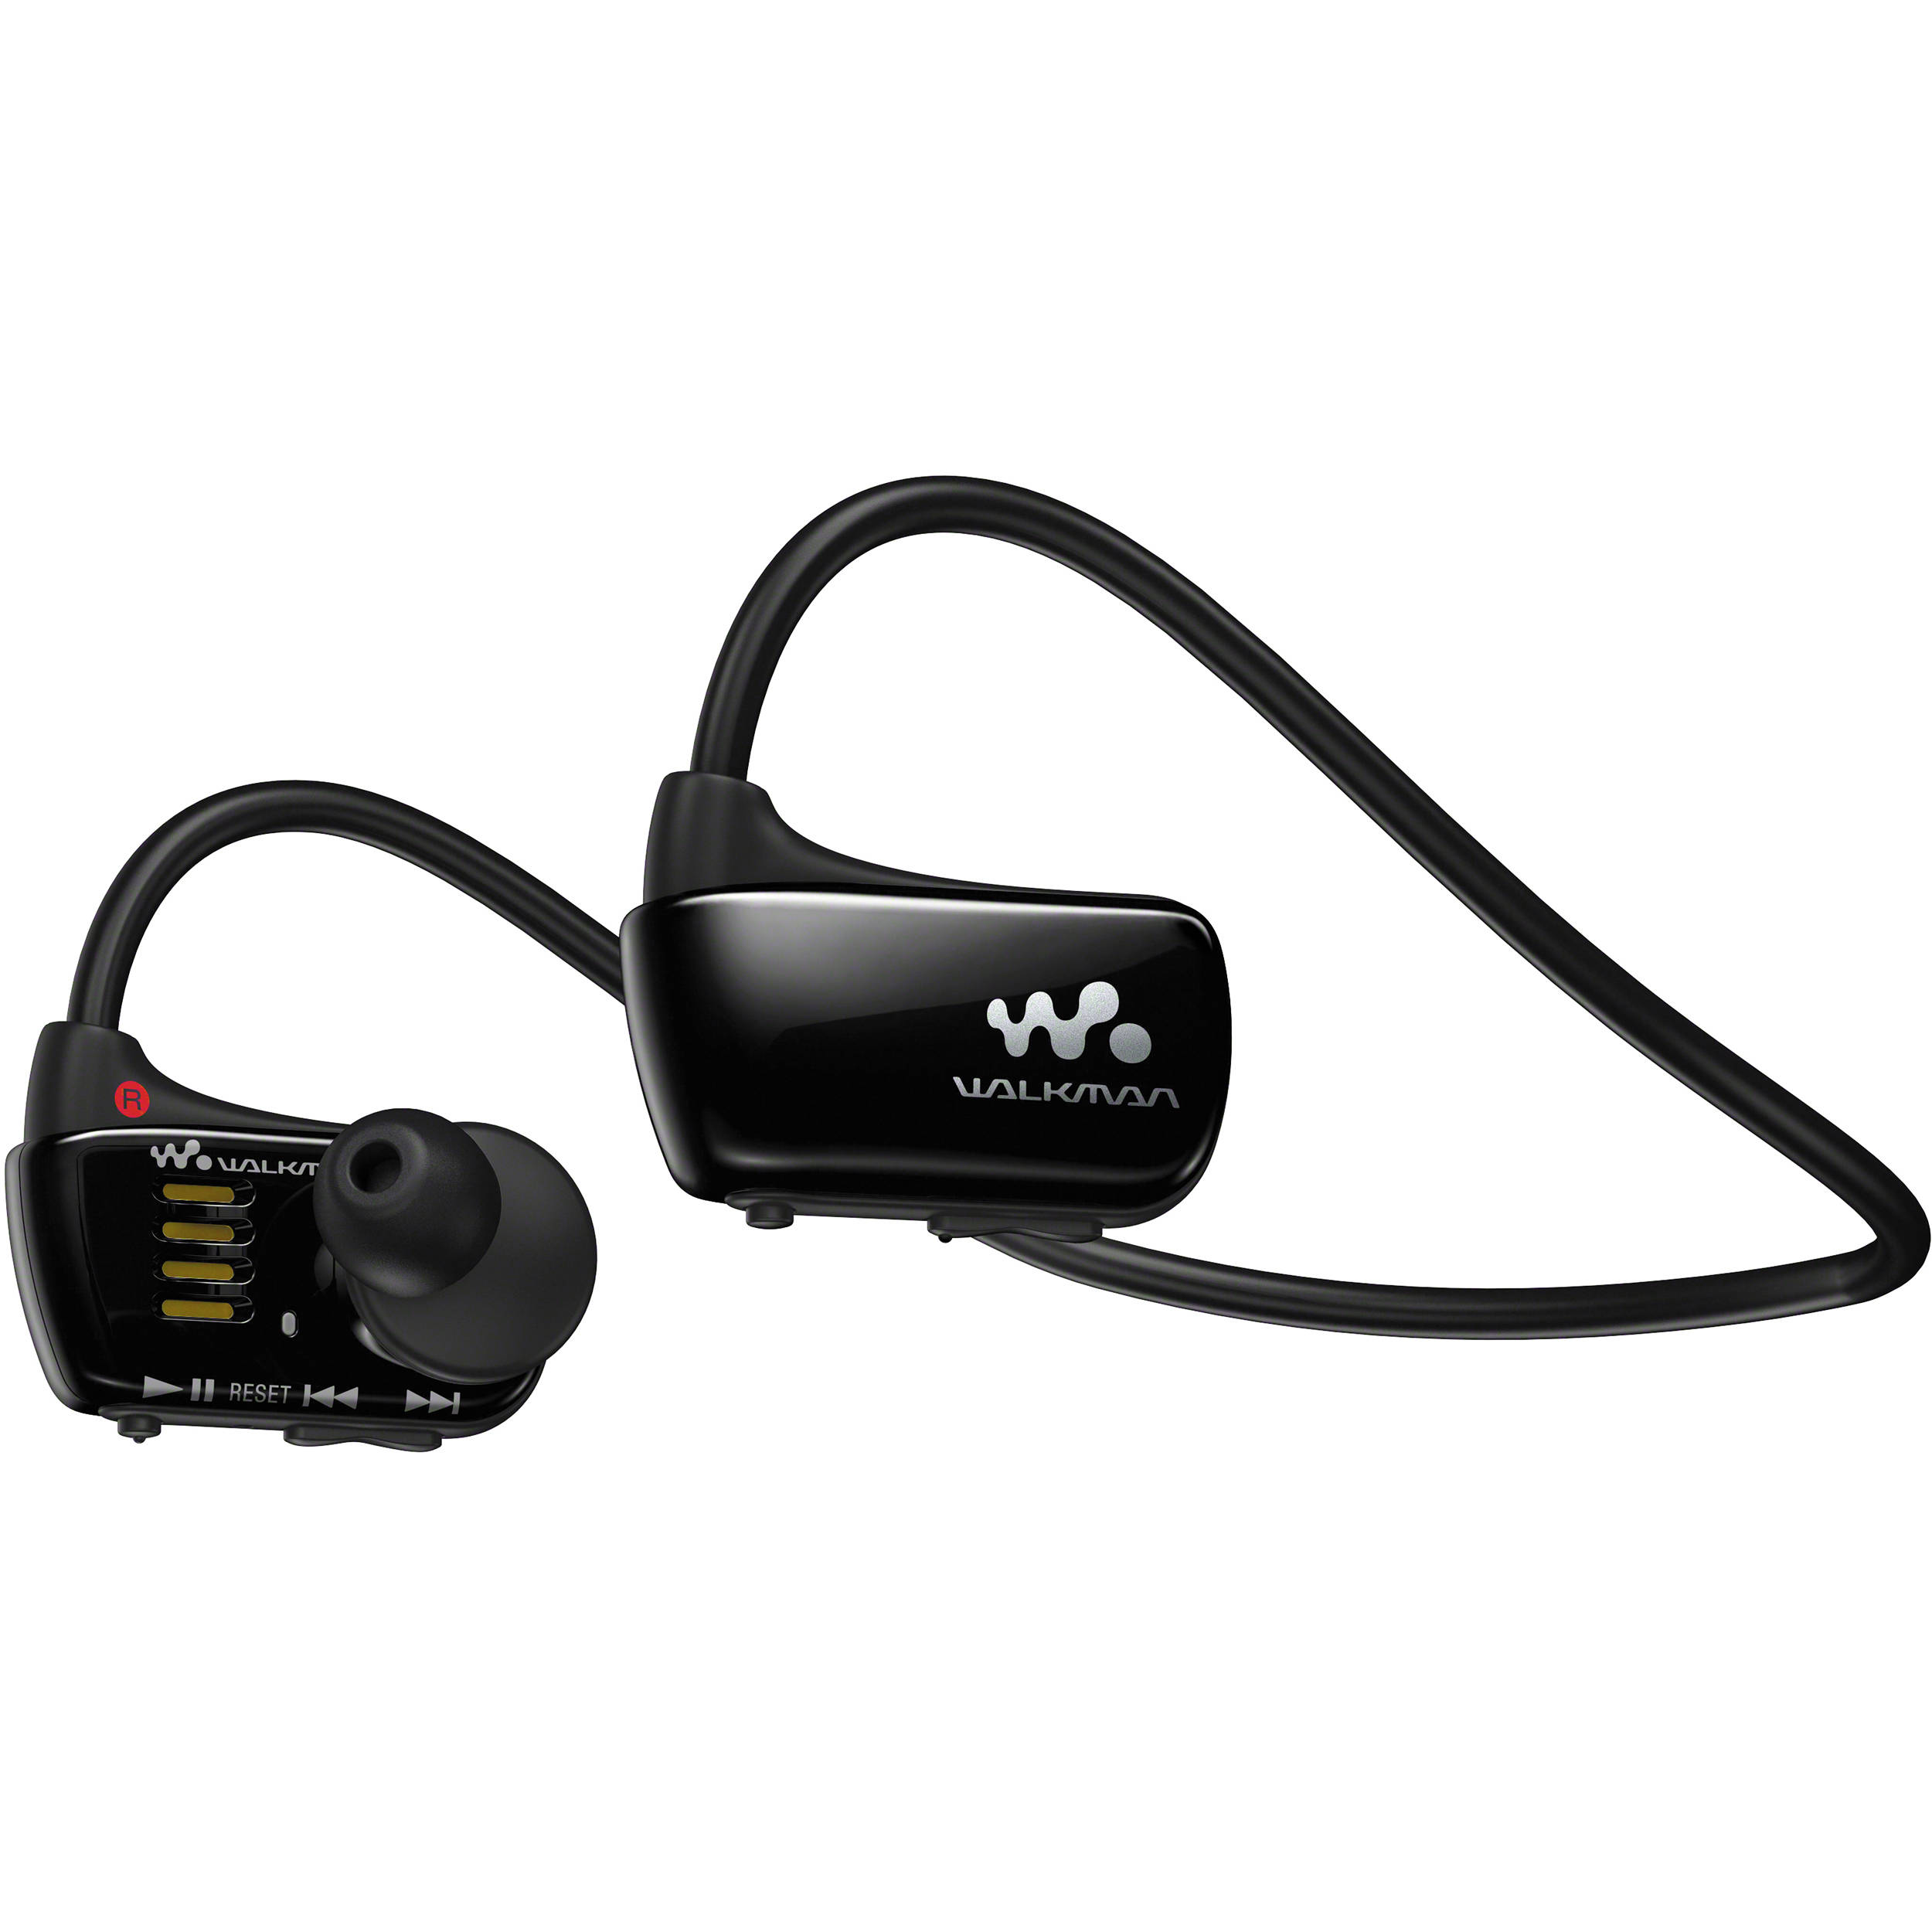 Sony 4gb W Series Walkman Sports Mp3 Player Black Nwzw273sblk